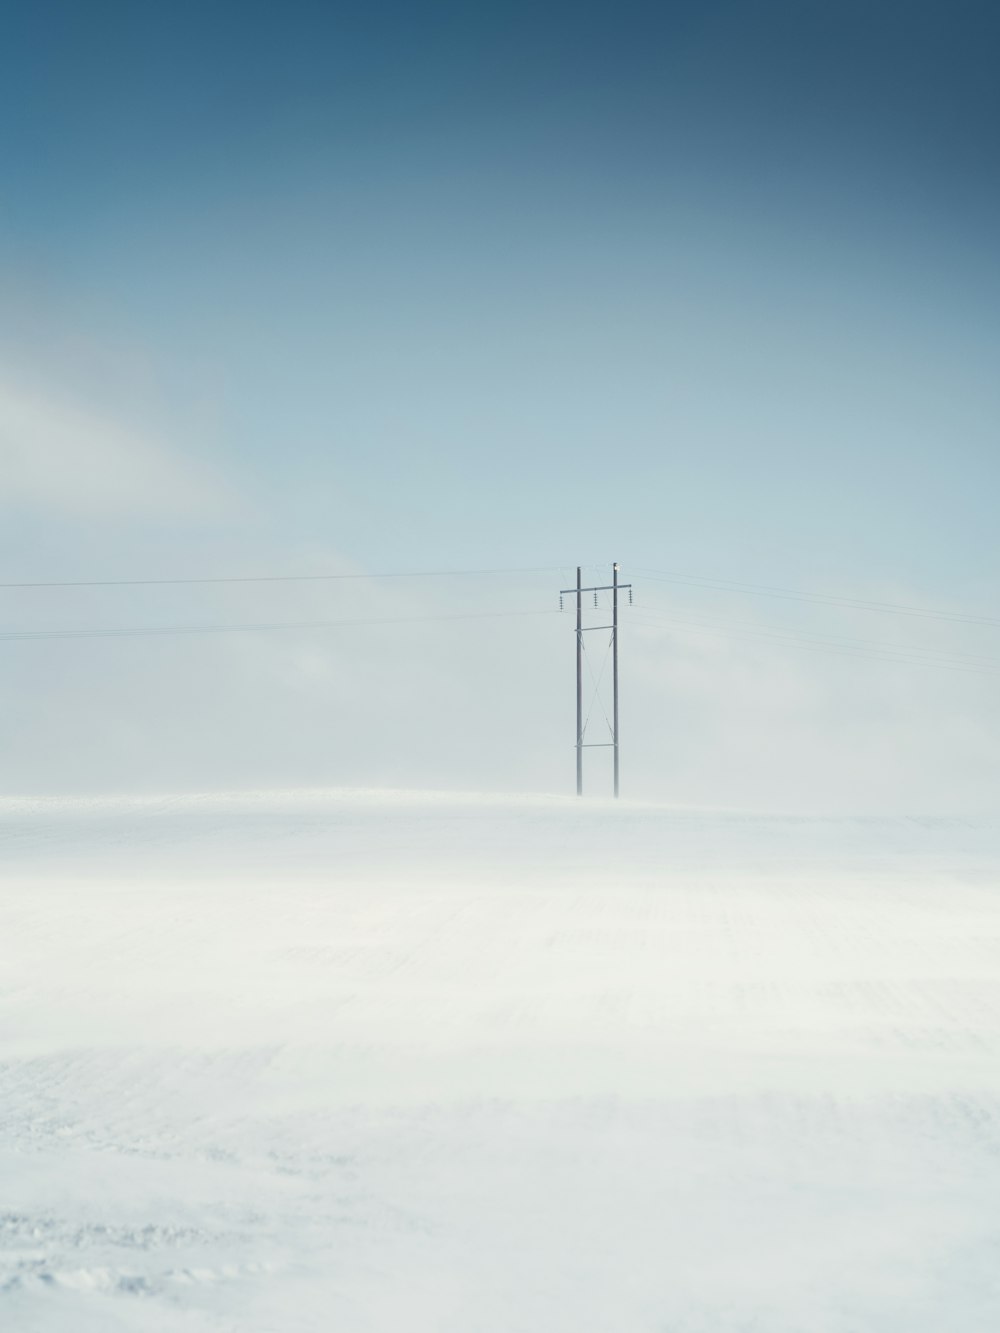 poste elétrico preto no chão coberto de neve sob o céu azul durante o dia